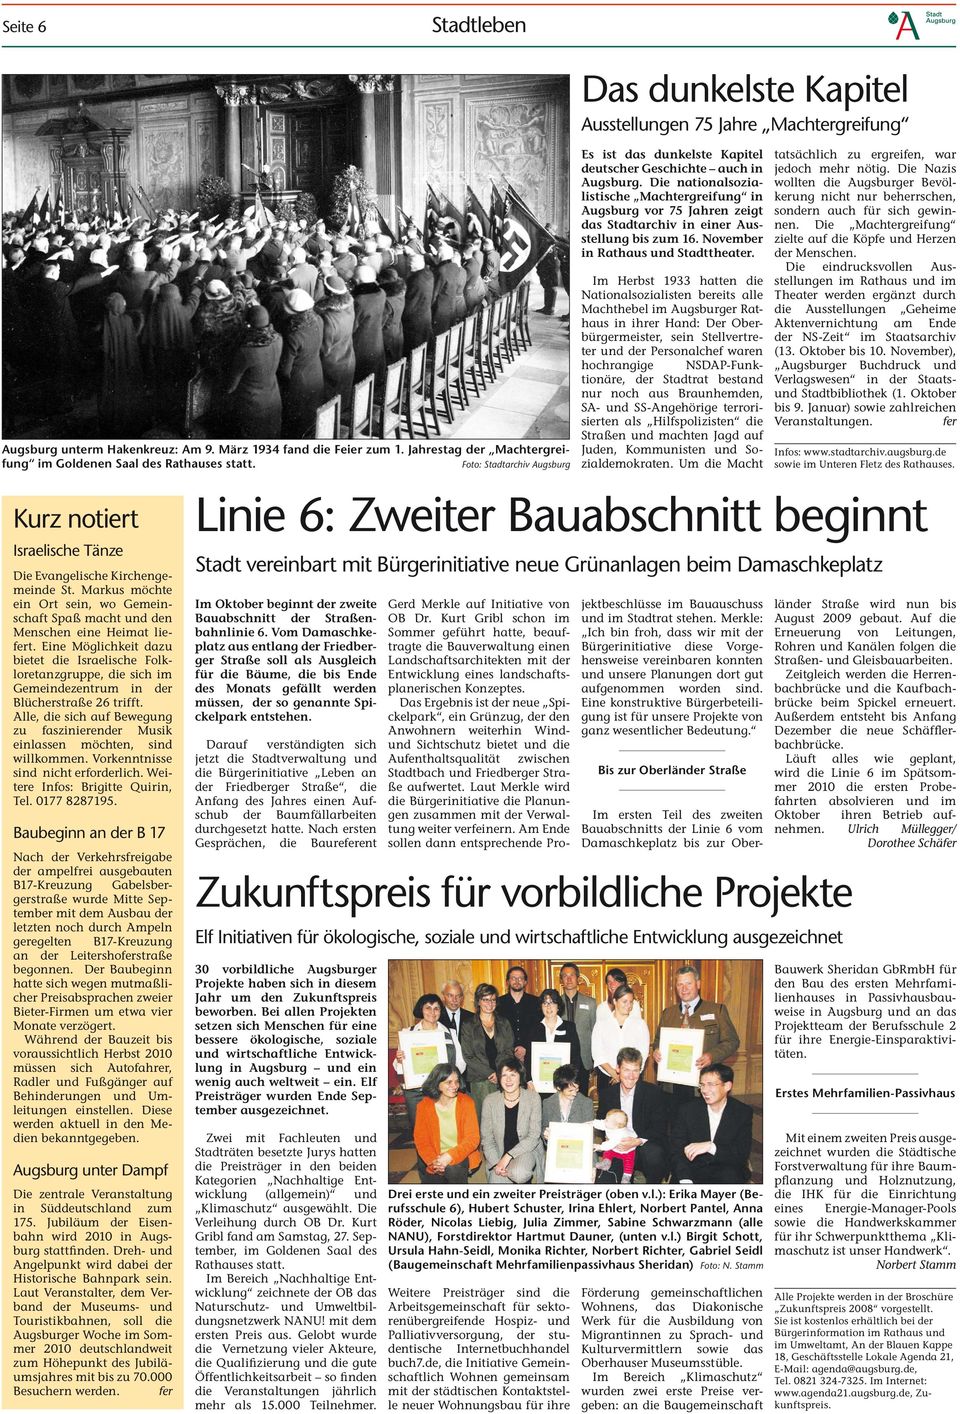 Die nationalsozialistische Machtergreifung in Augsburg vor 75 Jahren zeigt das Stadtarchiv in einer Ausstellung bis zum 16. November in Rathaus und Stadttheater.